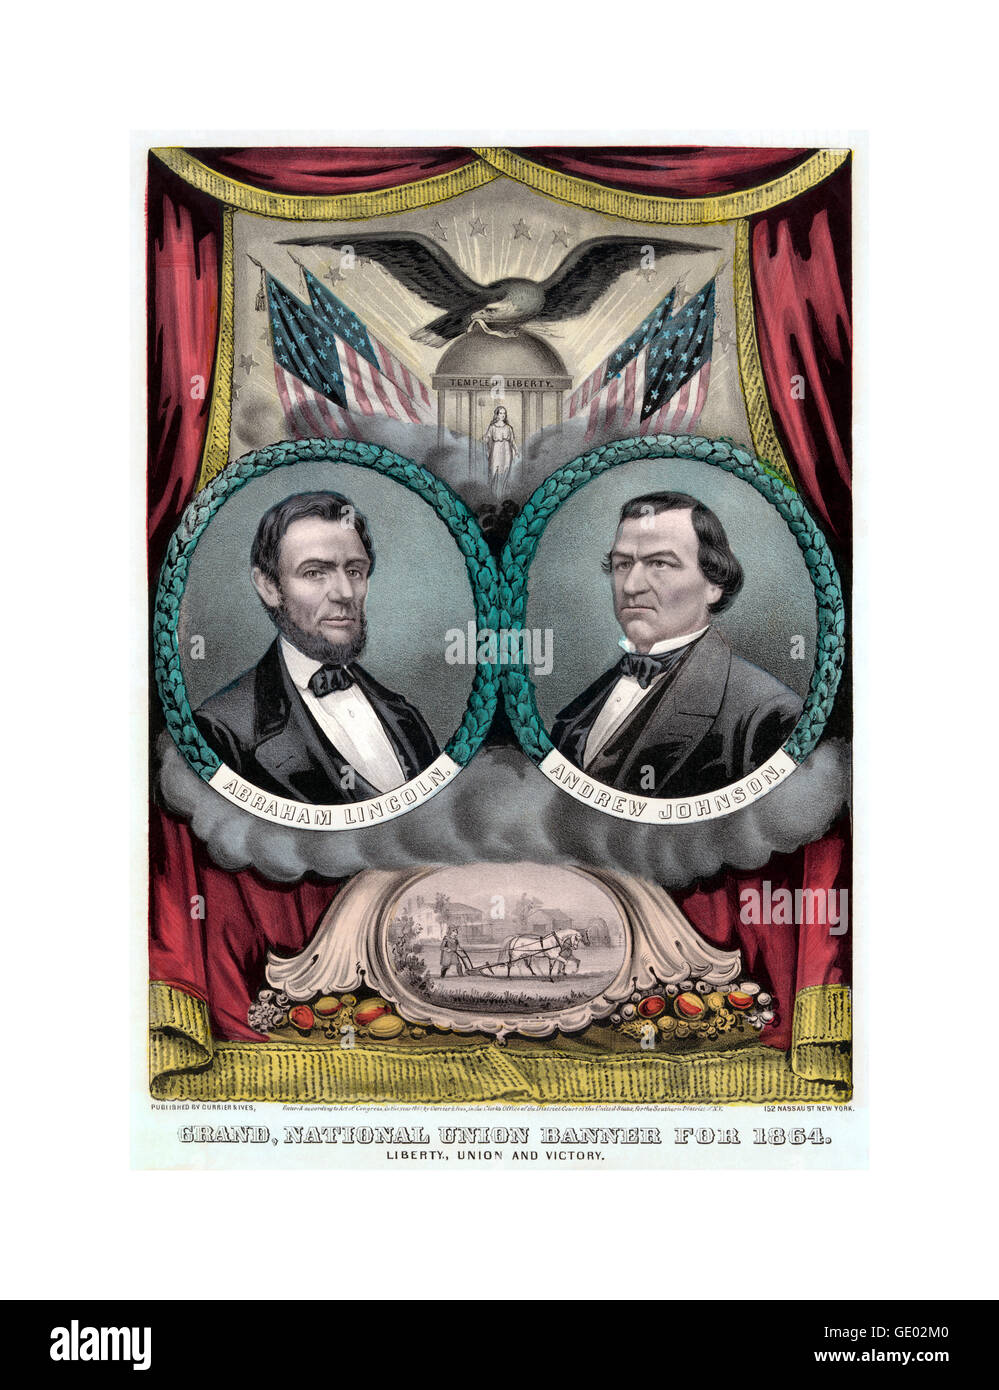 Stati Uniti elezioni presidenziali Repubblicani ticket, 1864 poster mostra un banner della campagna per il candidato presidenziale repubblicano Abraham Lincoln e il compagno di squadra Andrew Johnson. Foto Stock